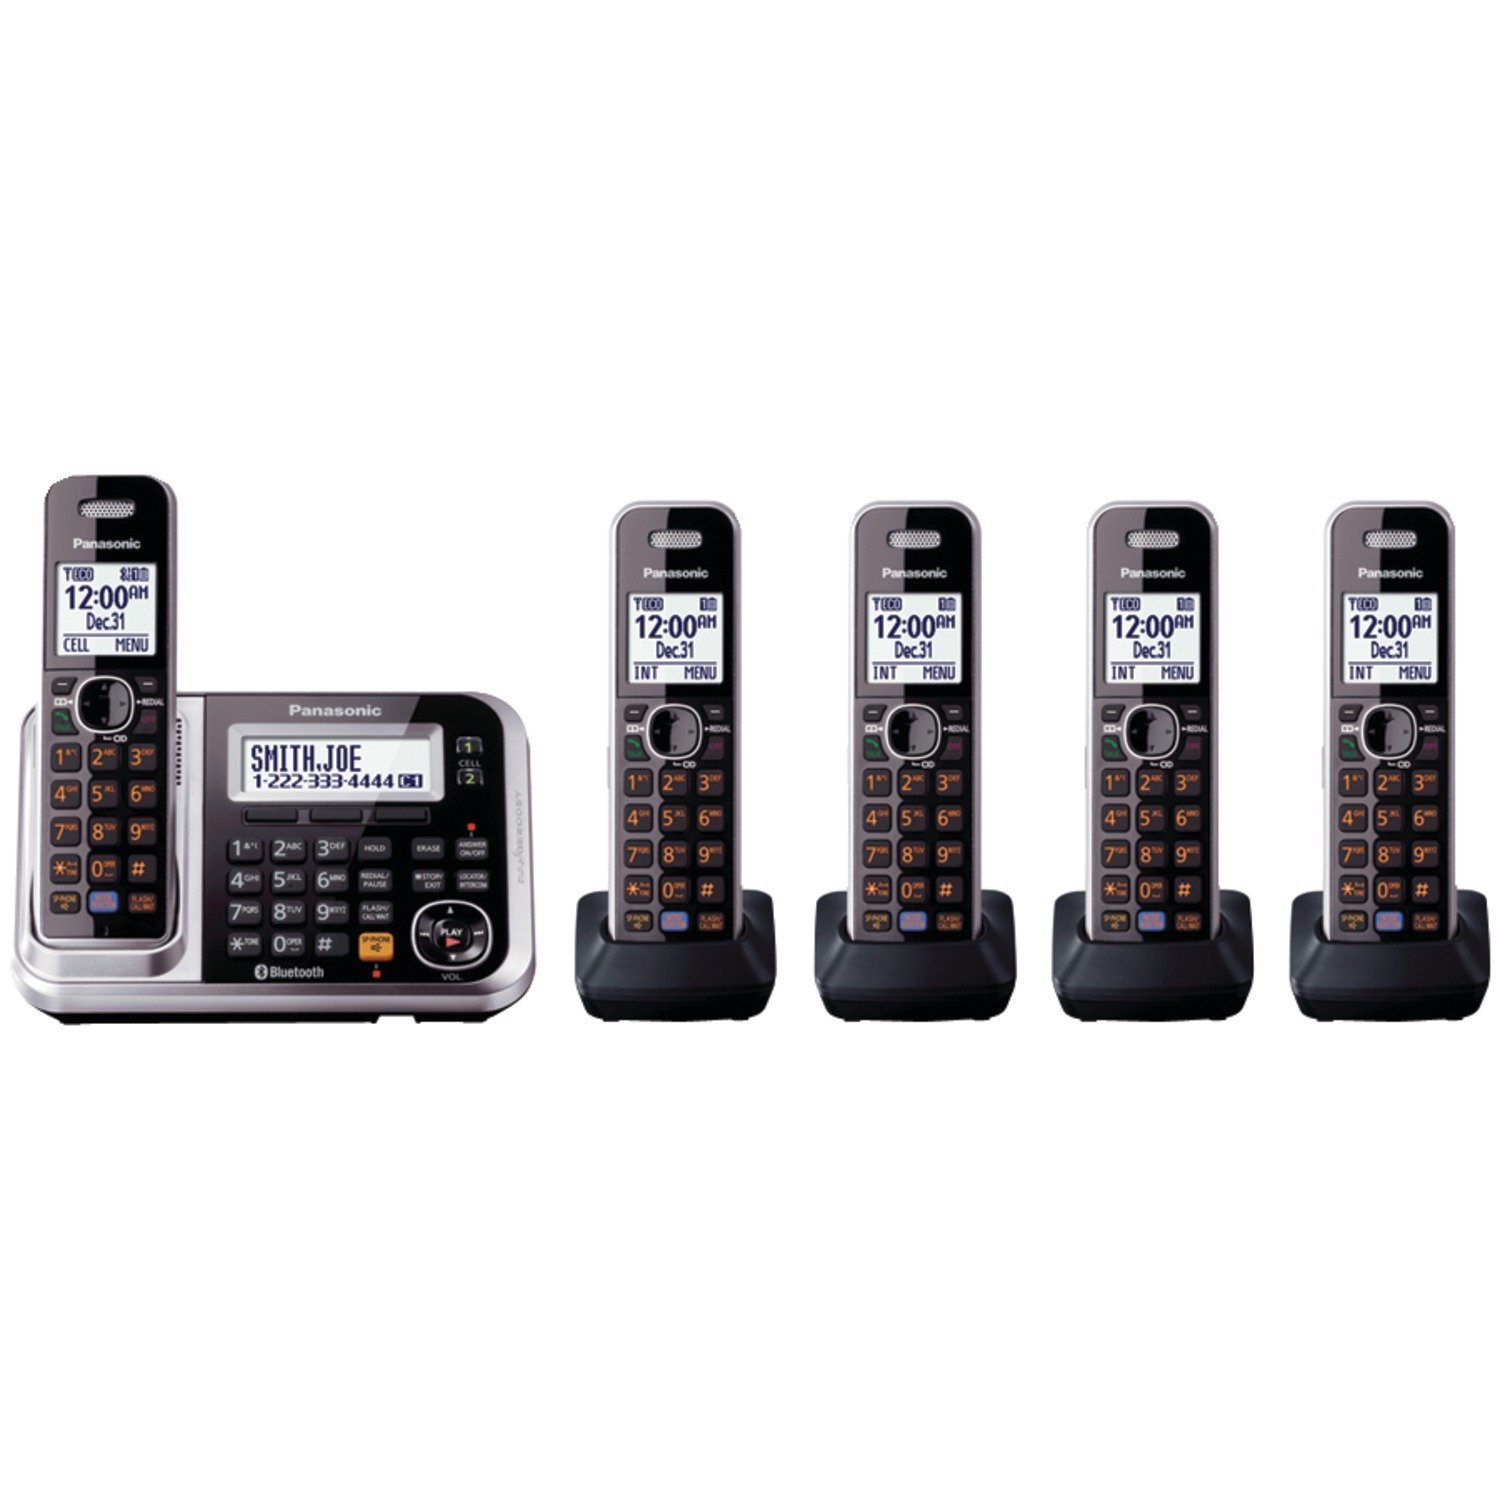  Panasonic Link2Cell KX-TG7875S DECT 6.0 1ラインBluetoothコードレス電話、強化されたノイズリダクションおよびデジタル留守番電話-5ハンドセット、ブラック/...